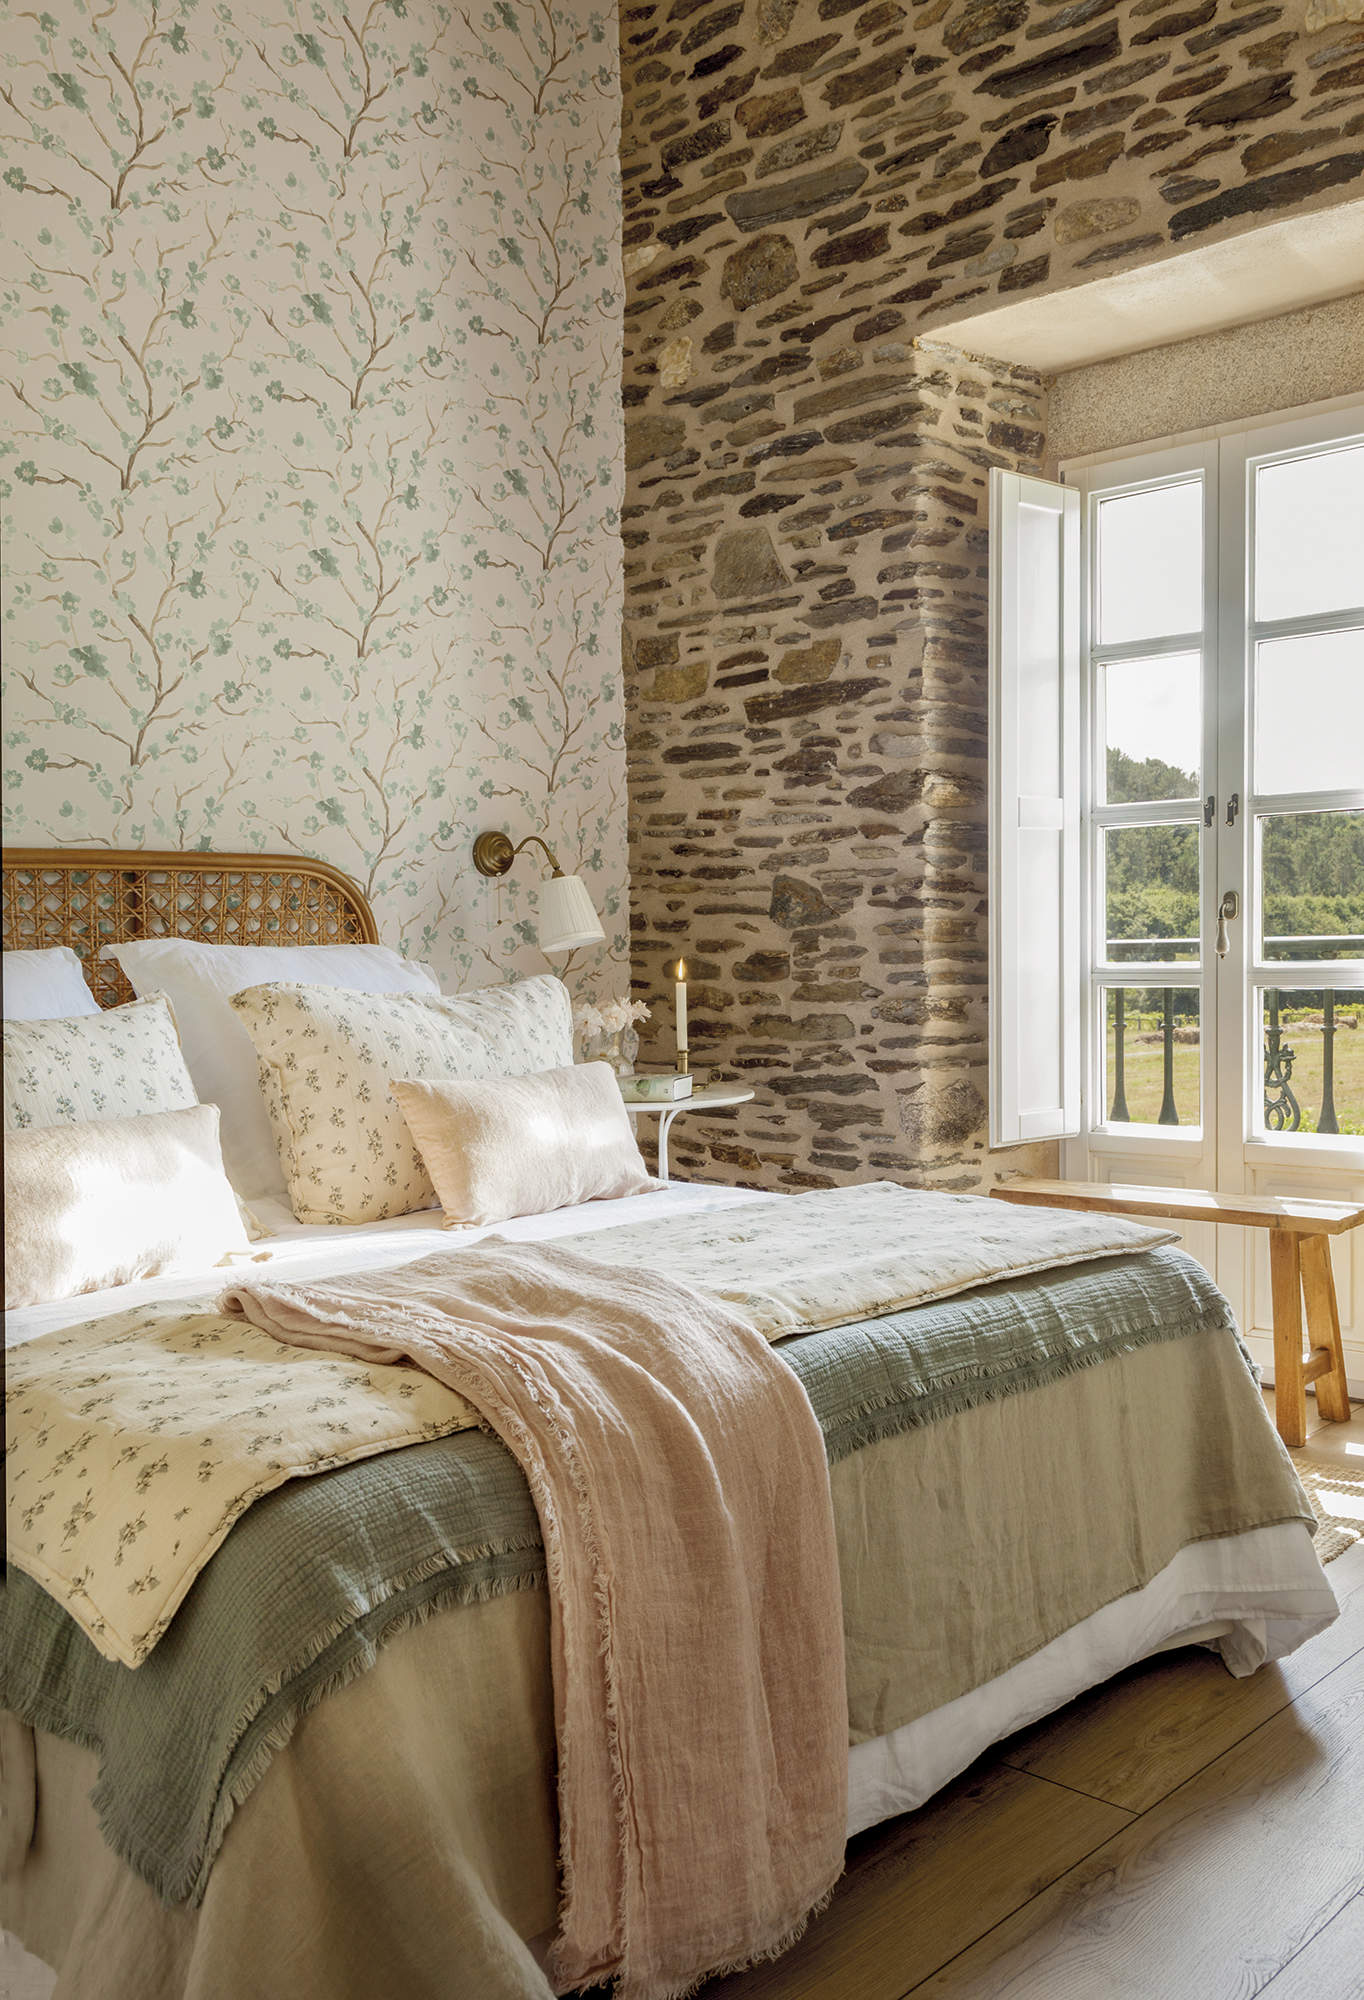 Dormitorio rústico con pared de piedra y papel pintado.